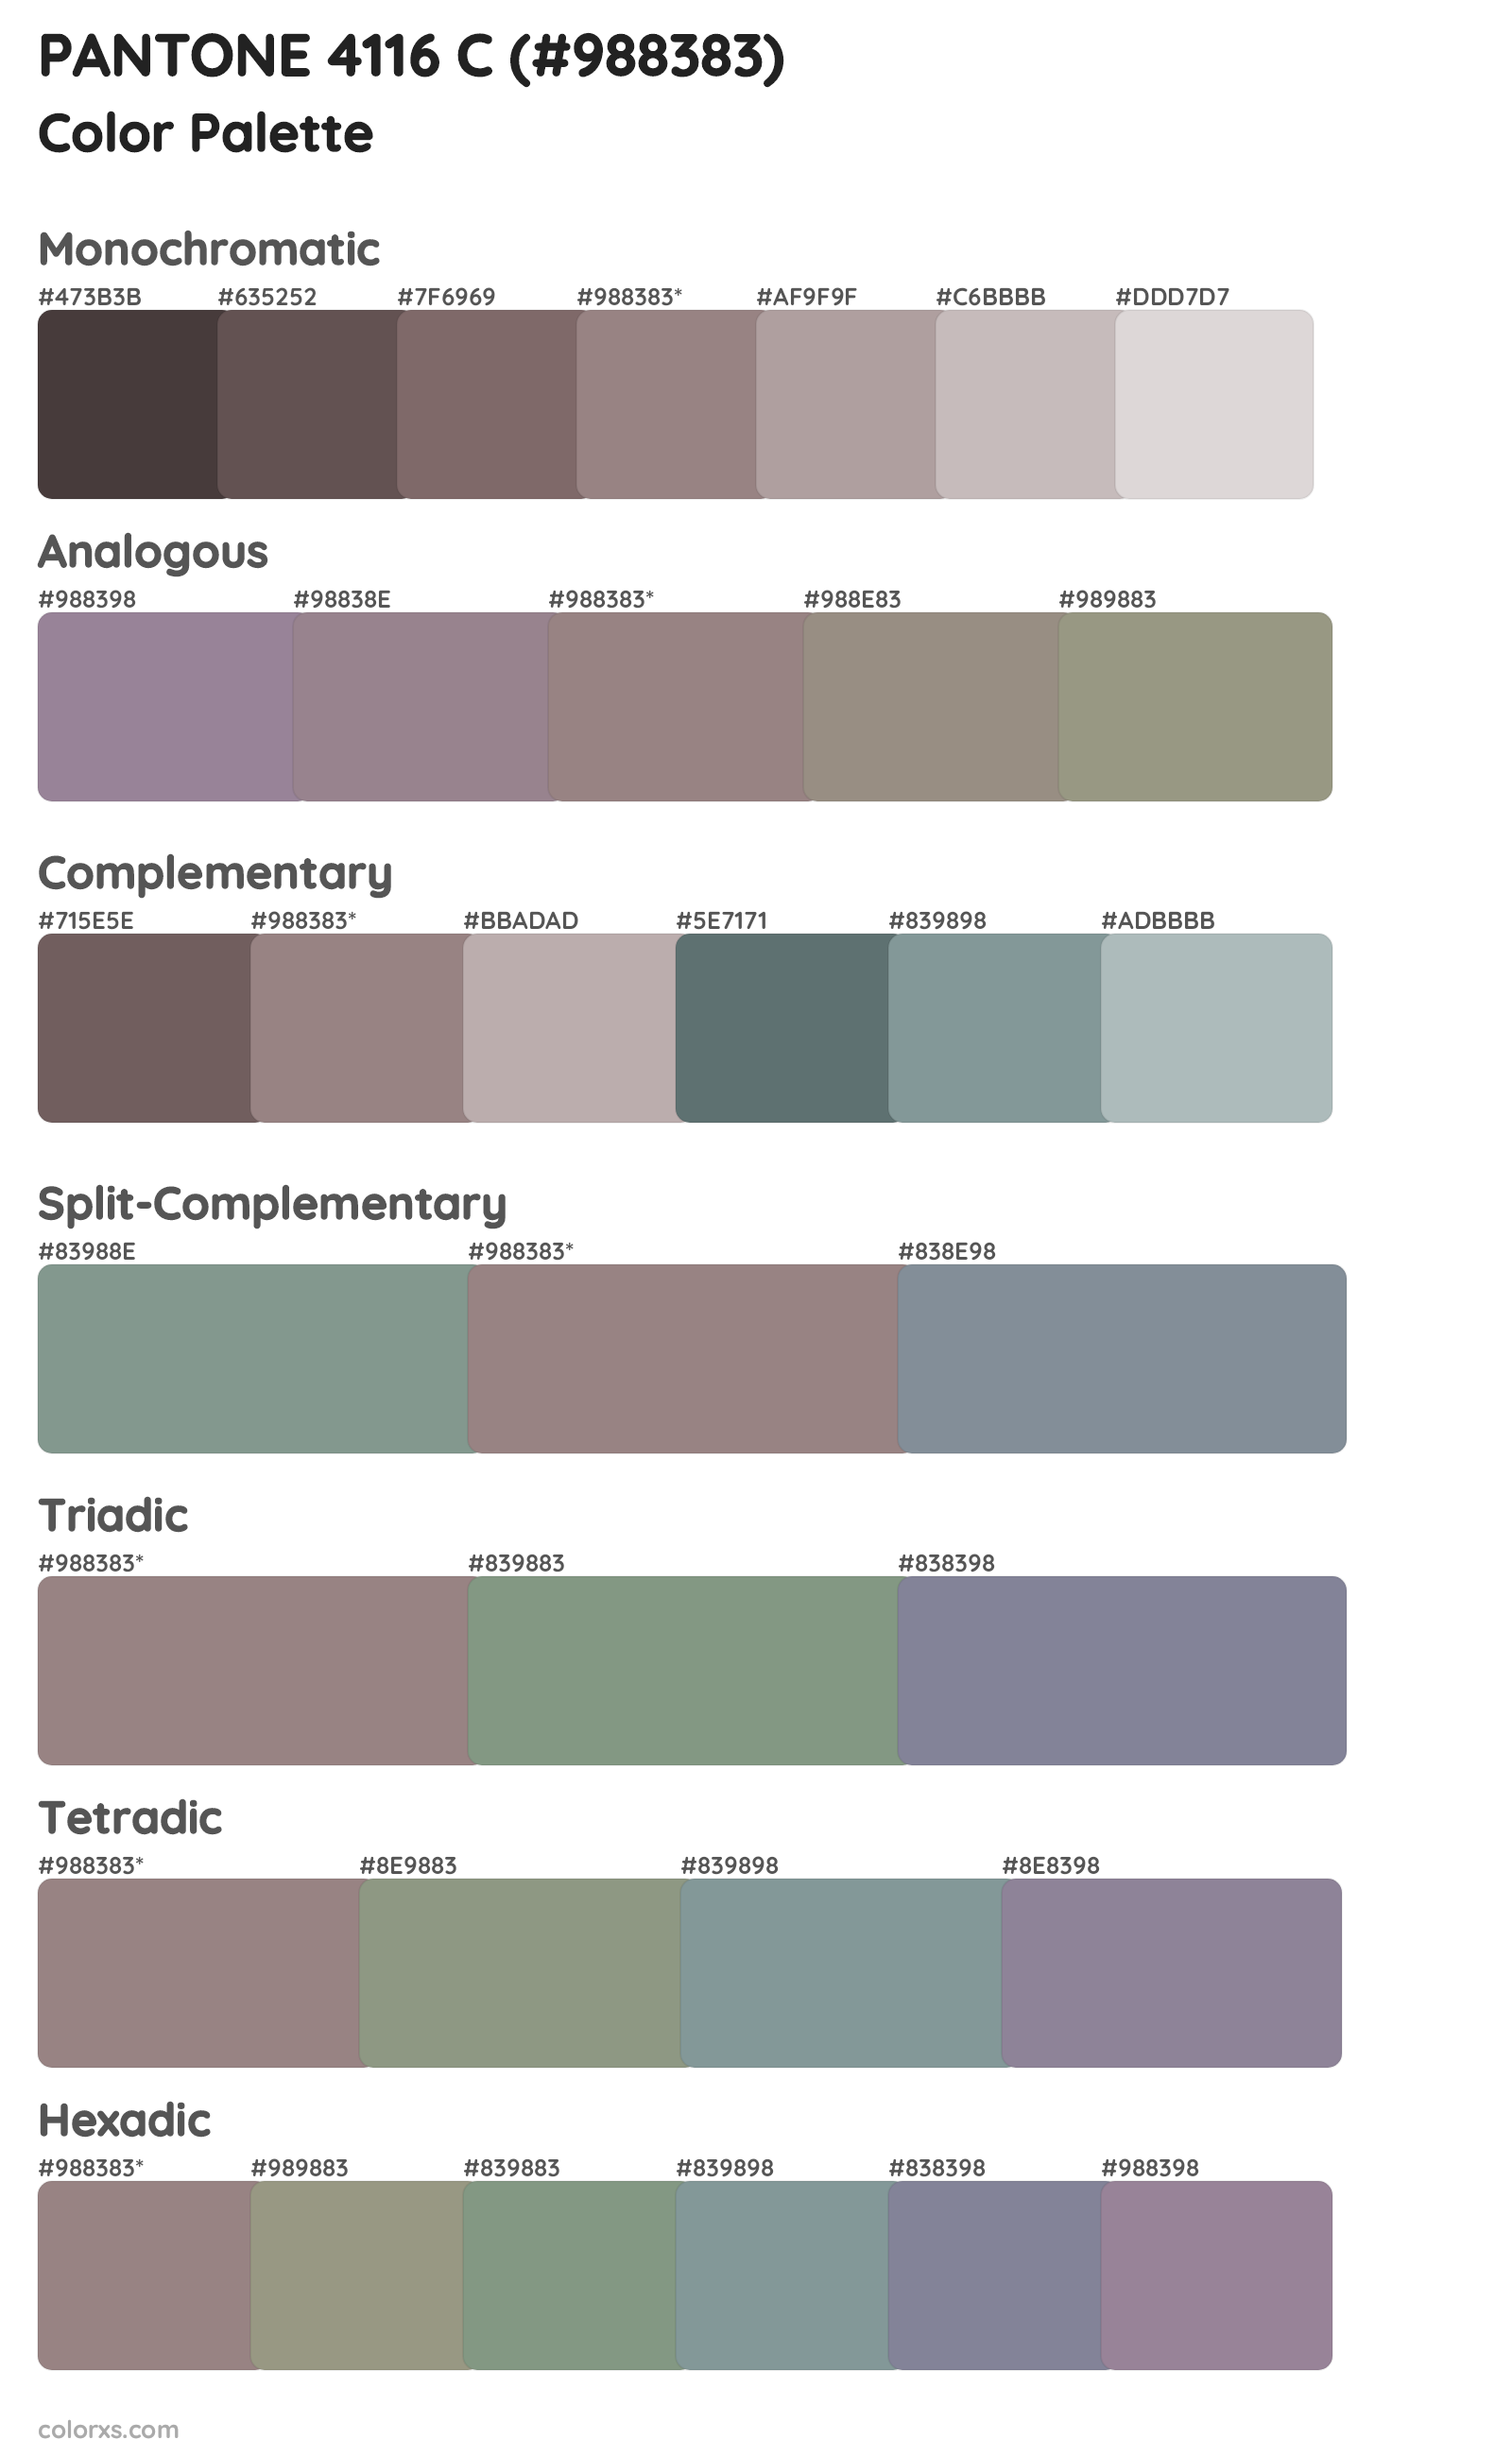 PANTONE 4116 C Color Scheme Palettes